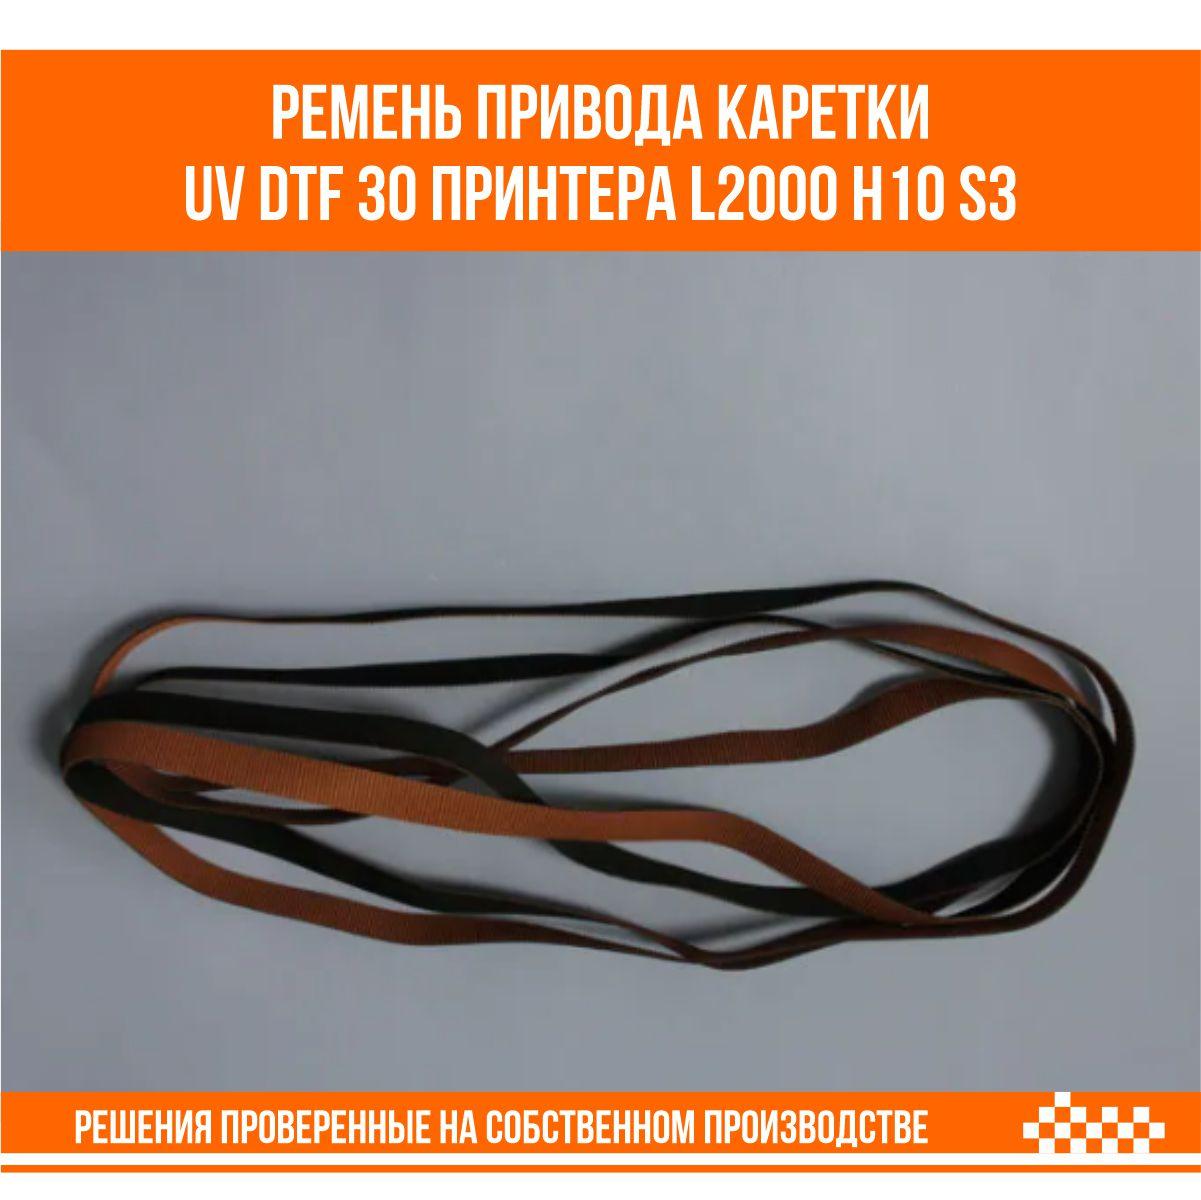 Ремень привода каретки для UV DTF 30 принтера (l2000 h10 S3)